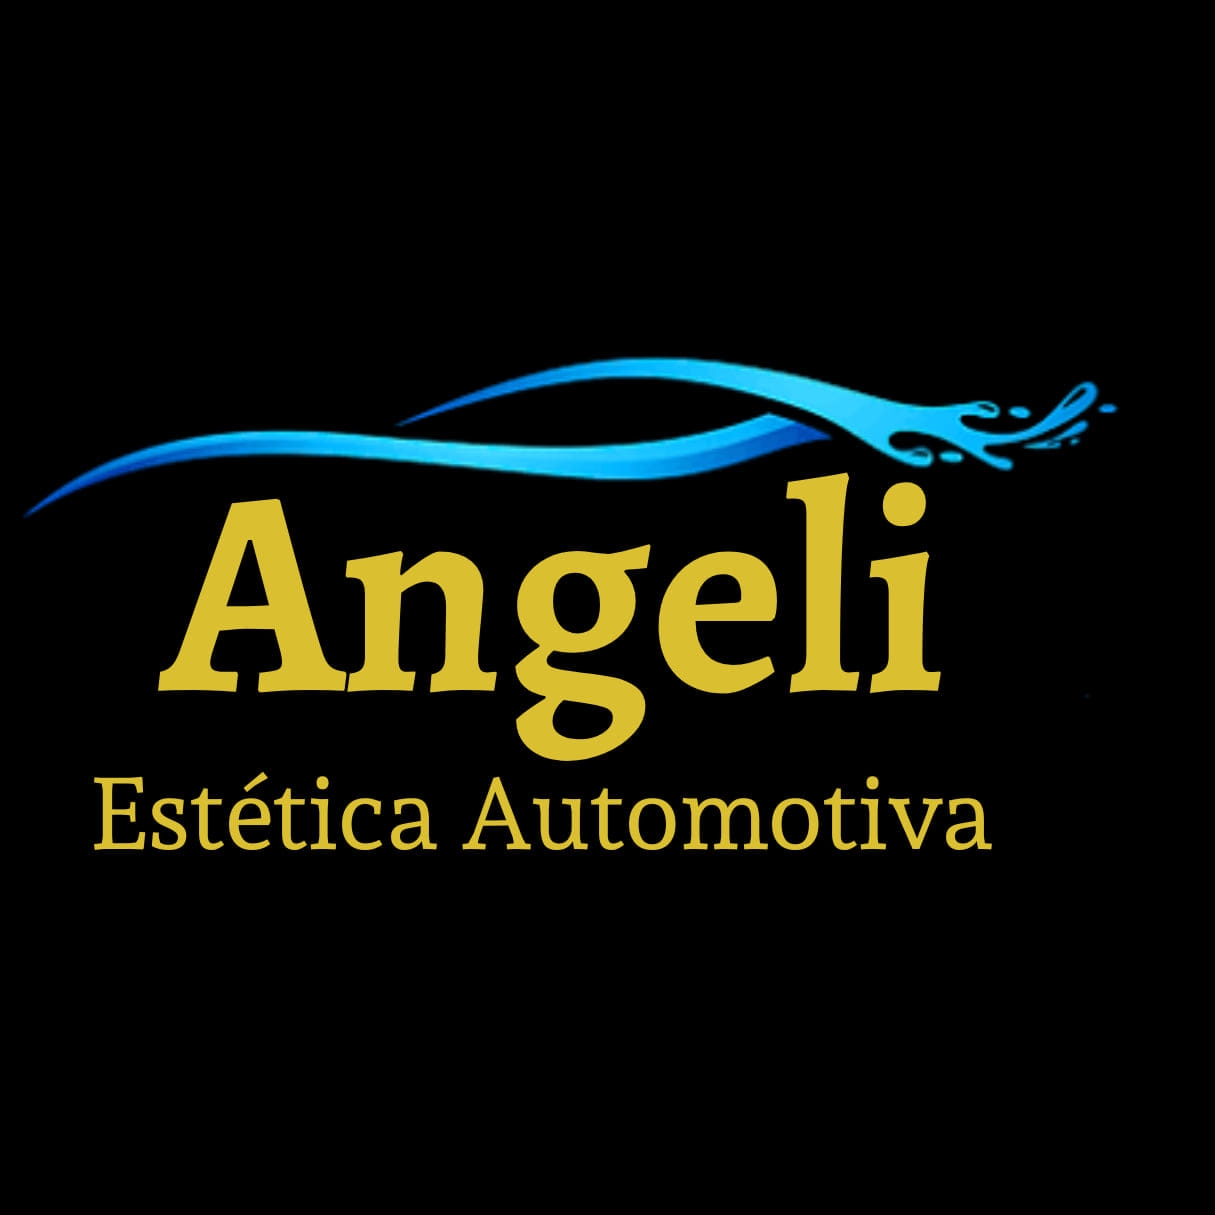 Angeli Estética Automotiva